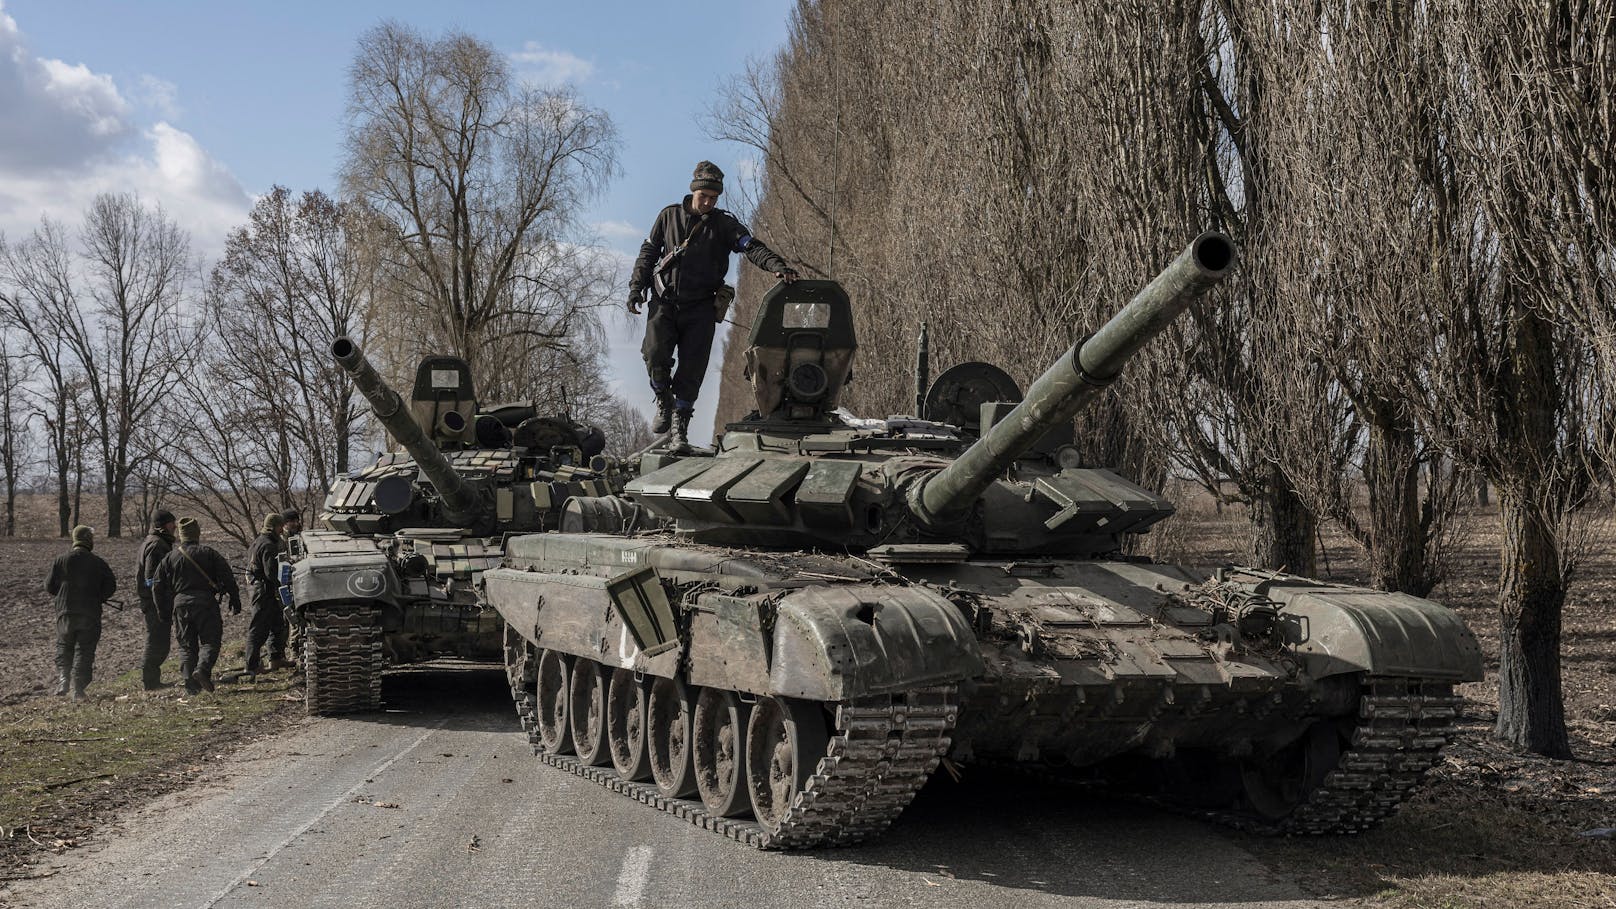 Soldaten sollen ukrainische Waisenkinder nach Russland entführen und nennen es "Adaption".